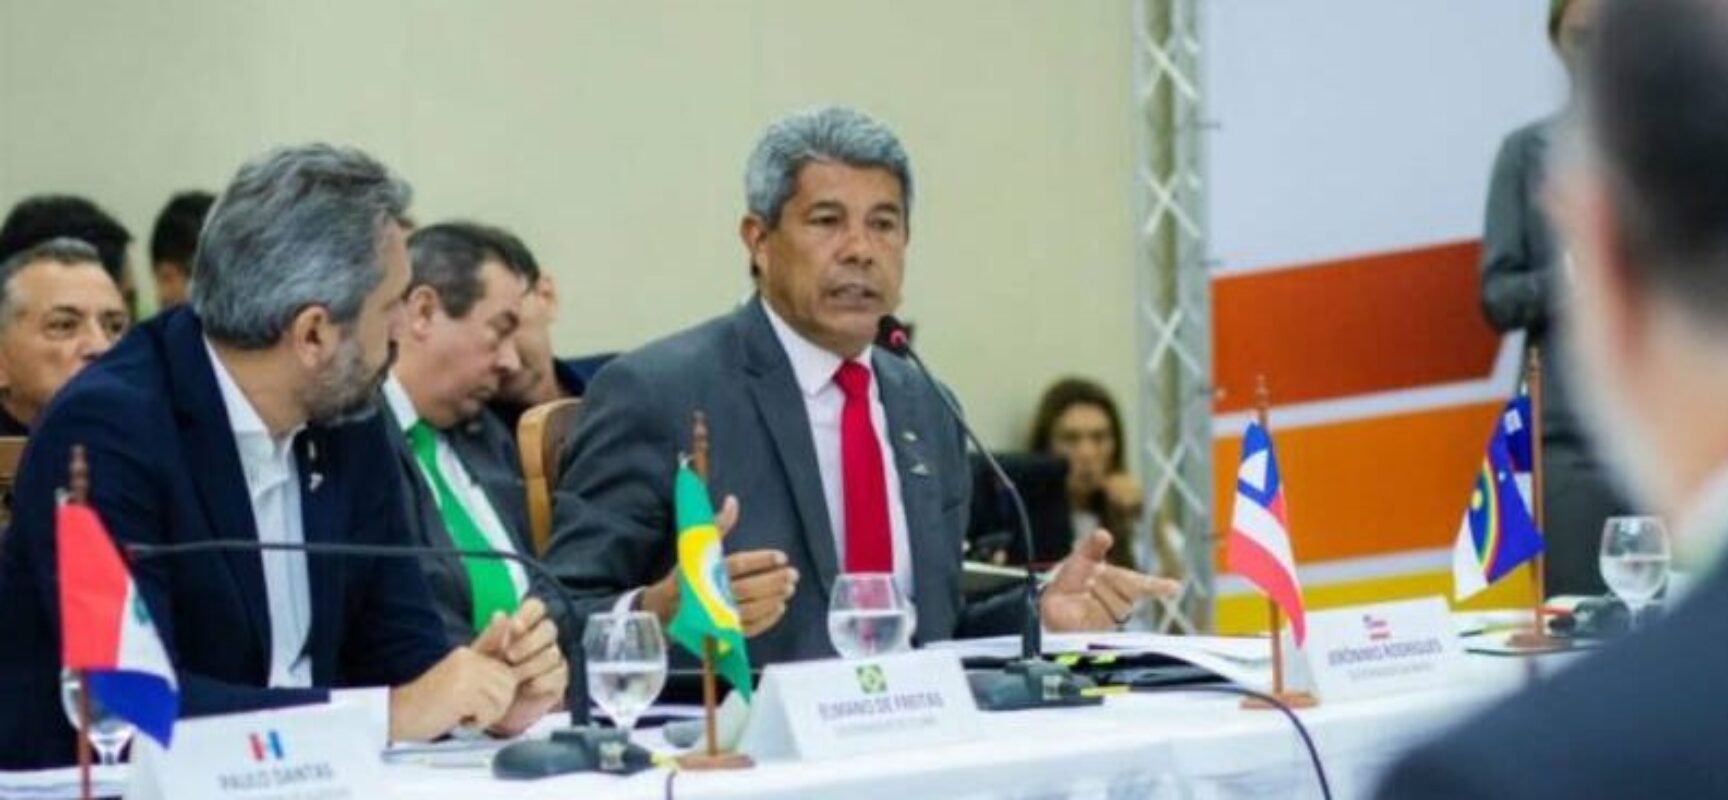 Em reunião do Consórcio Nordeste, Jerônimo aponta prioridades para investimentos federais na região